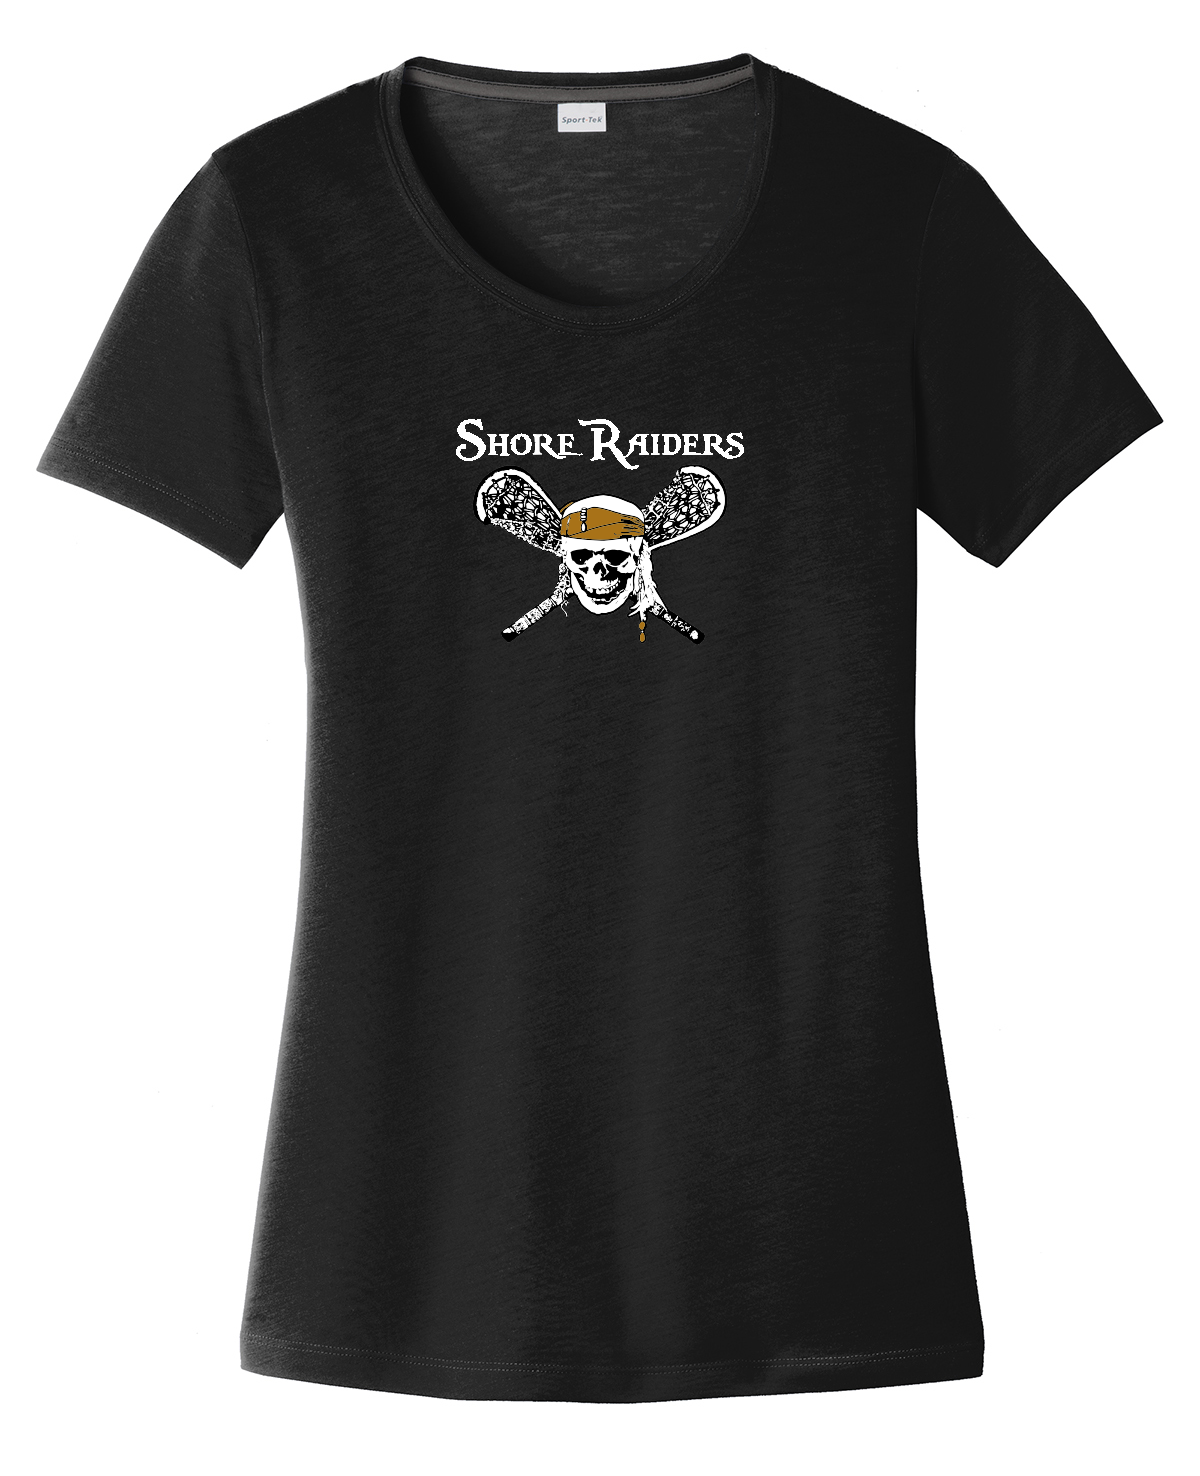 Shore Raiders Lacrosse Women's CottonTouch Performance T-Shirt